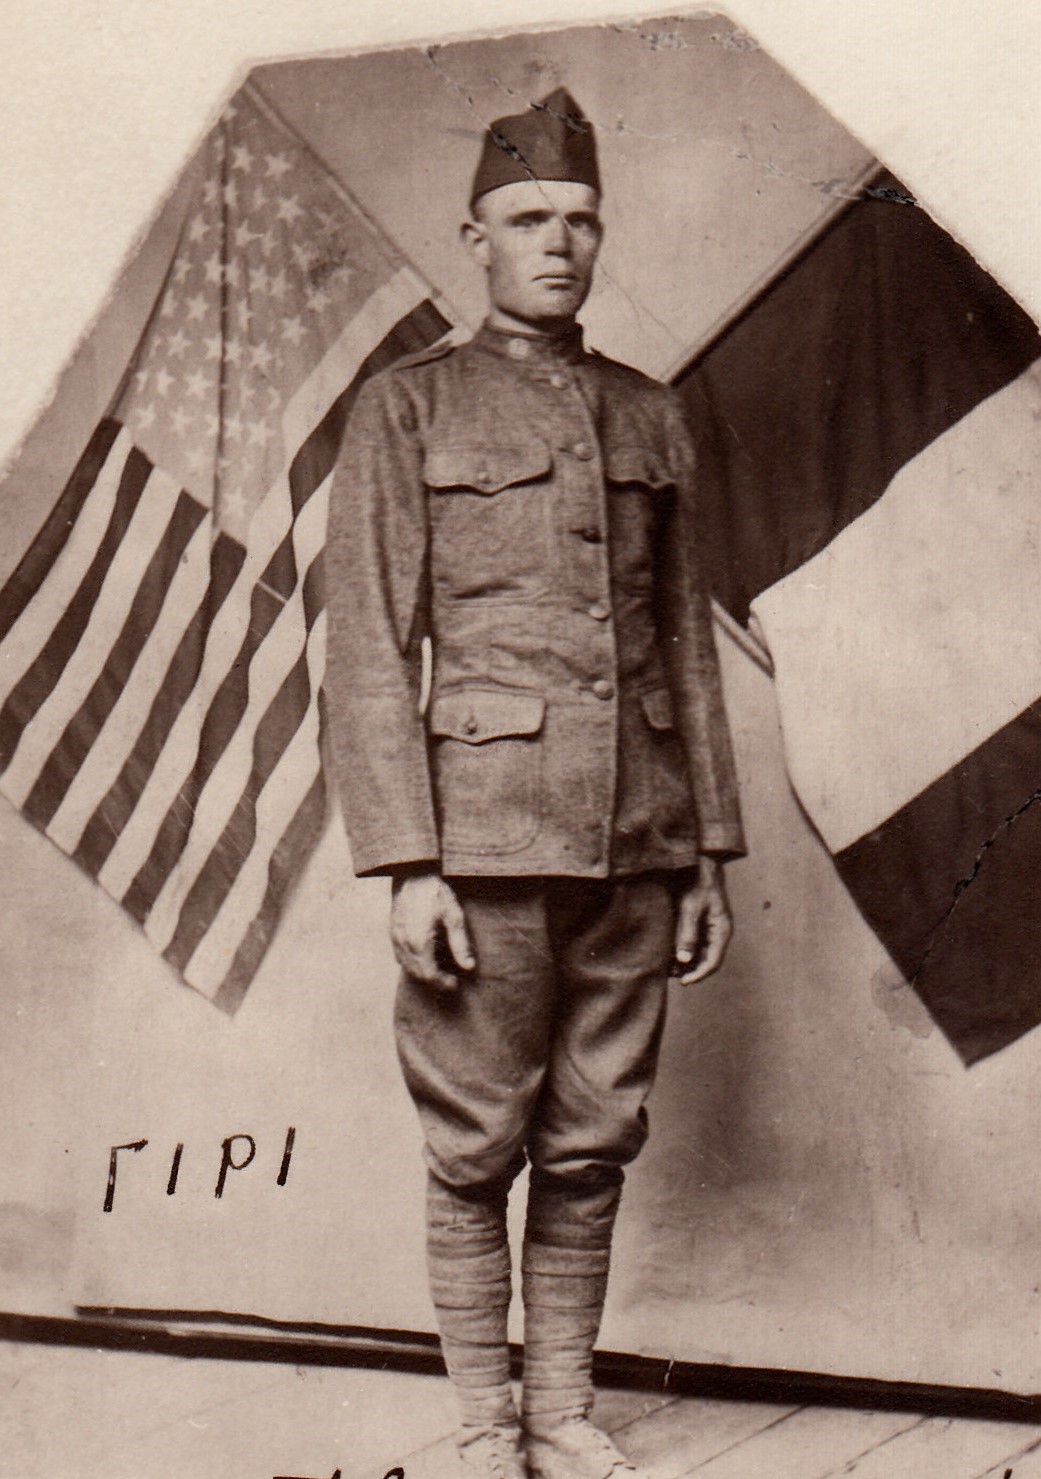 Don Allen Lightner in his military uniform